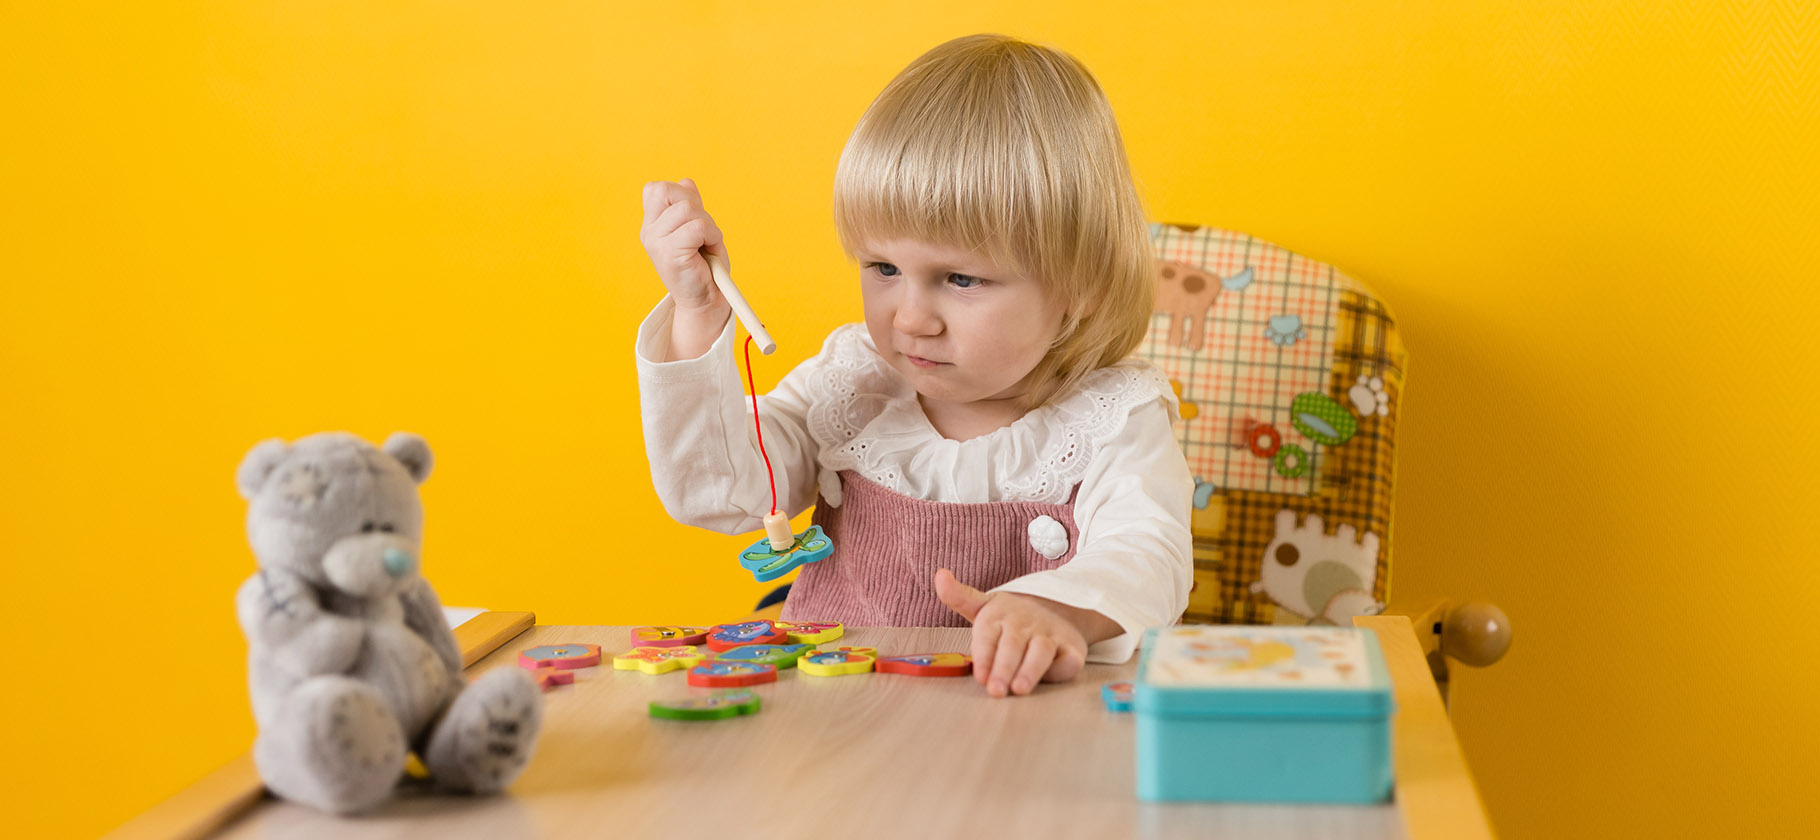 5 развивающих игрушек своими руками для детей до 3 лет